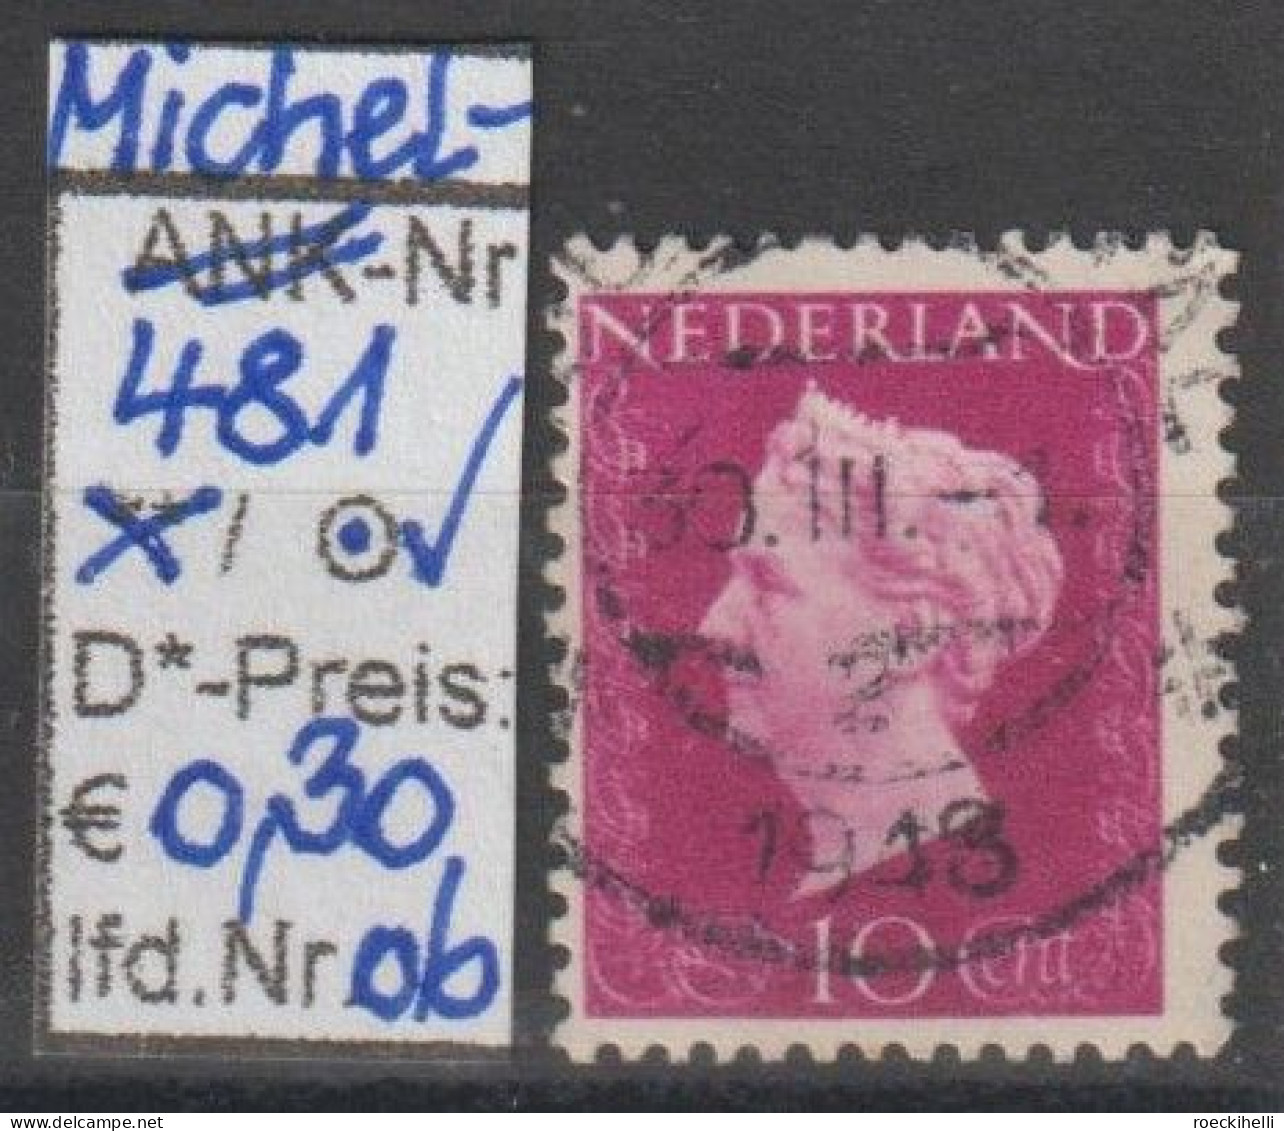 1947 - NIEDERLANDE - FM/DM "Königin Wilhelmina" 10 C rotviolett - o gestempelt - s. Scan (481o 01-08 nl)